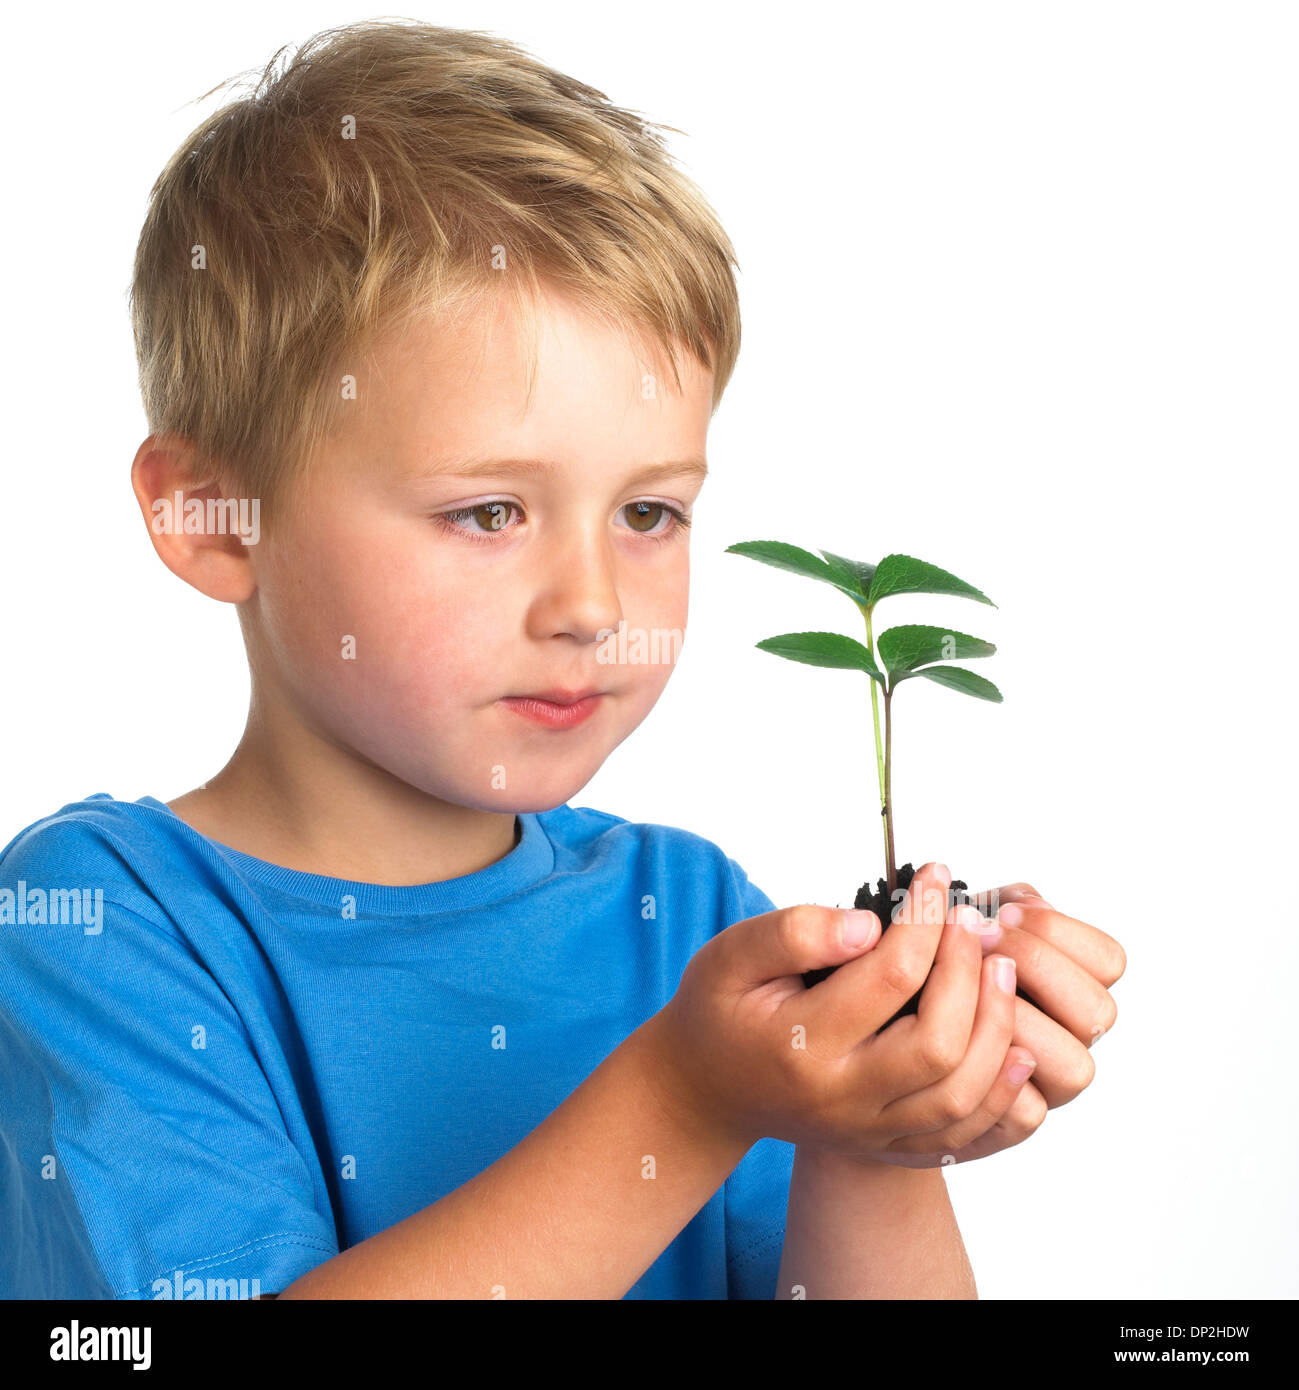 Boy holding seedling Stock Photo